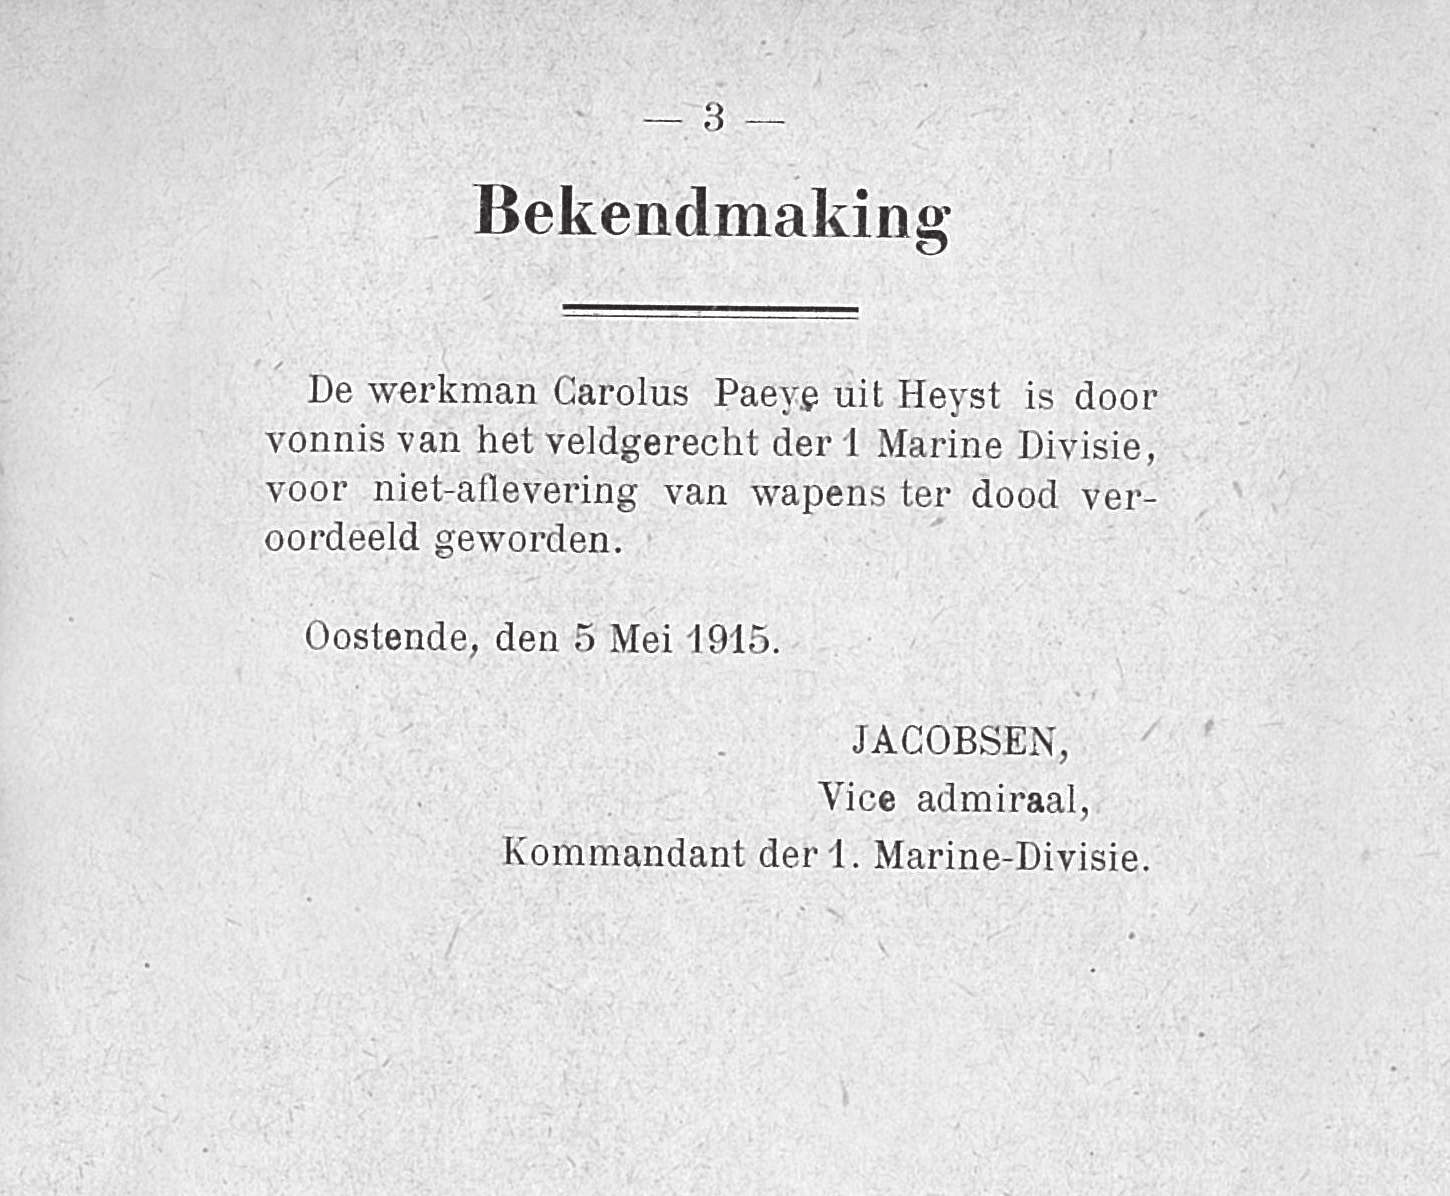 WEKELIJKSE OORLOGSKRANT Gazet van Oostende week 19 (9 tot 15 mei 1915) Nieuws uit Oostende Draken boven Oostende 9 mei.